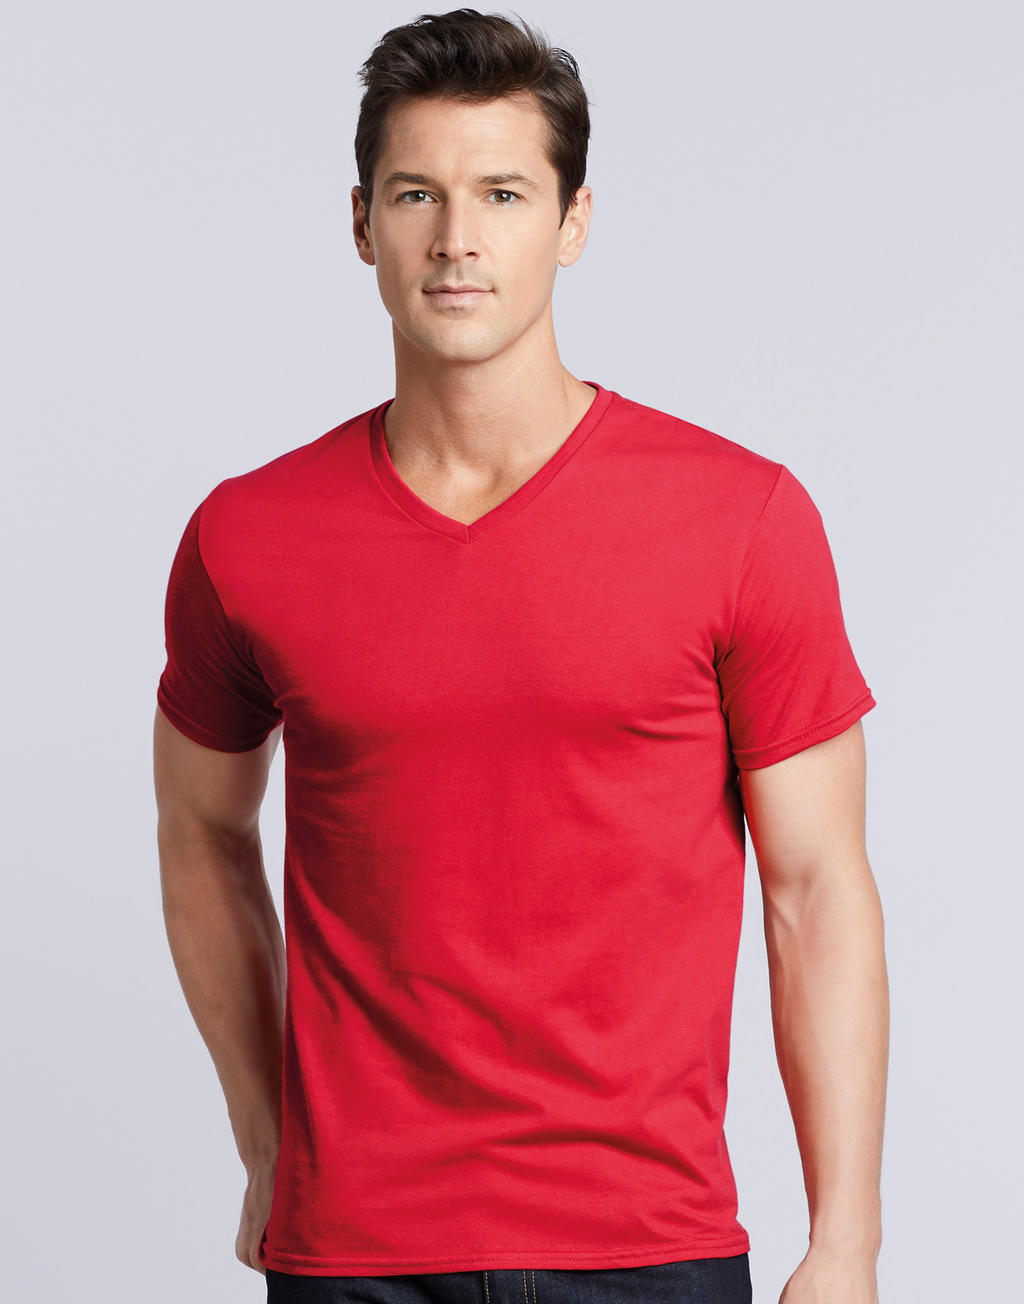 Premium Cotton Adult V-Neck T-Shirt